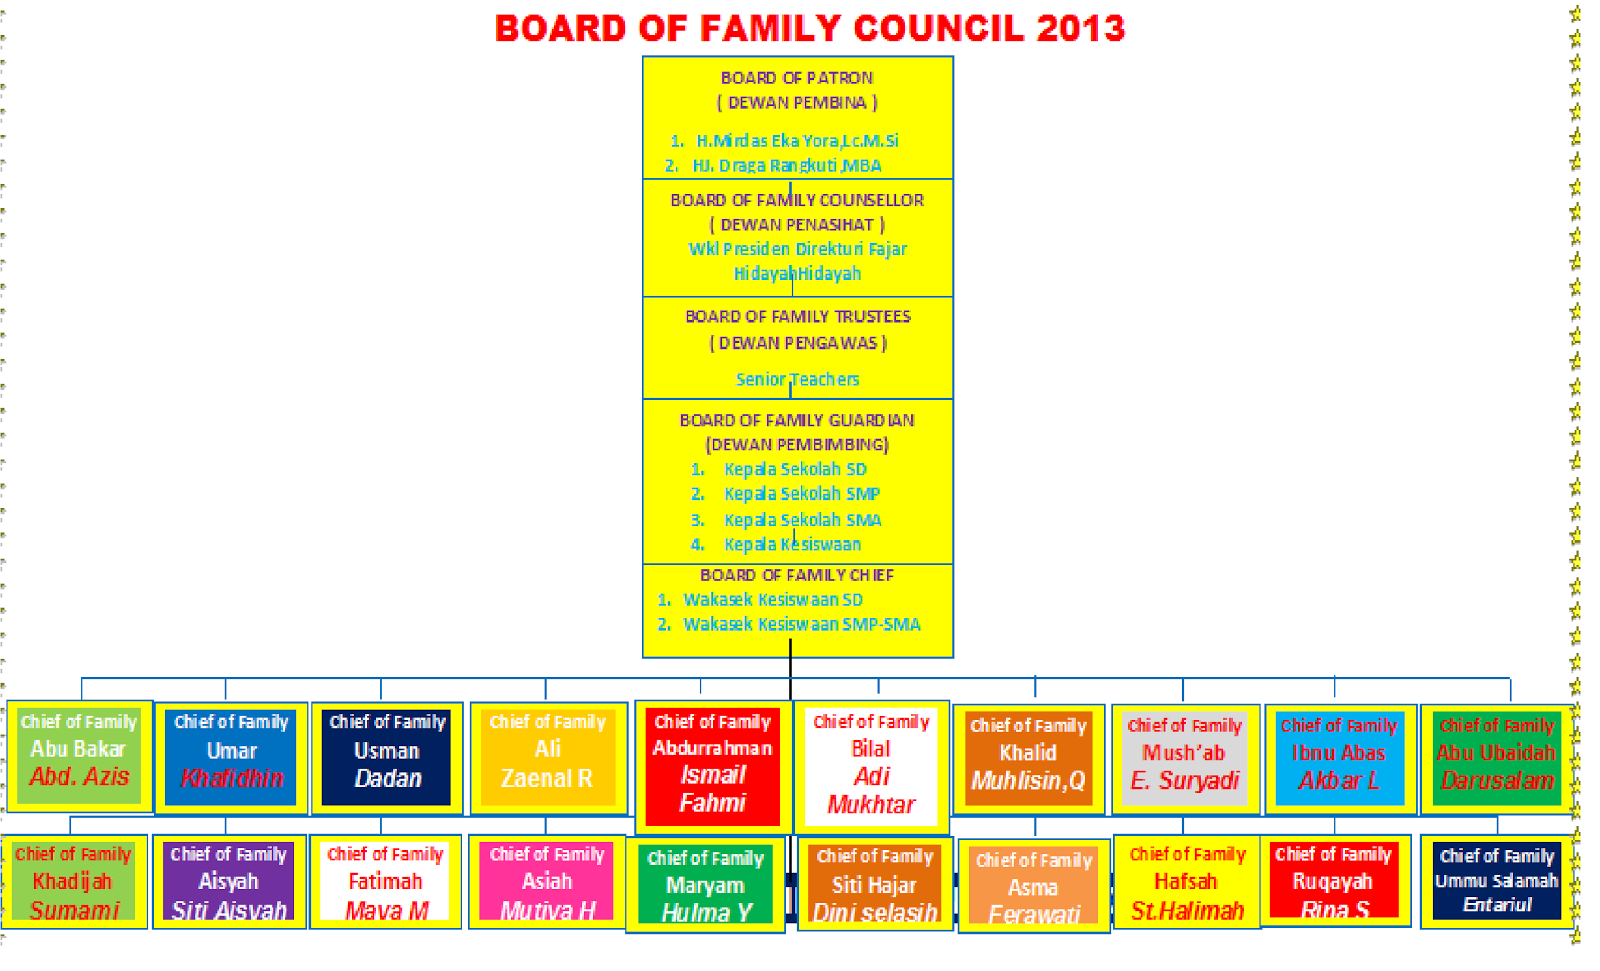 struktur family council 2013